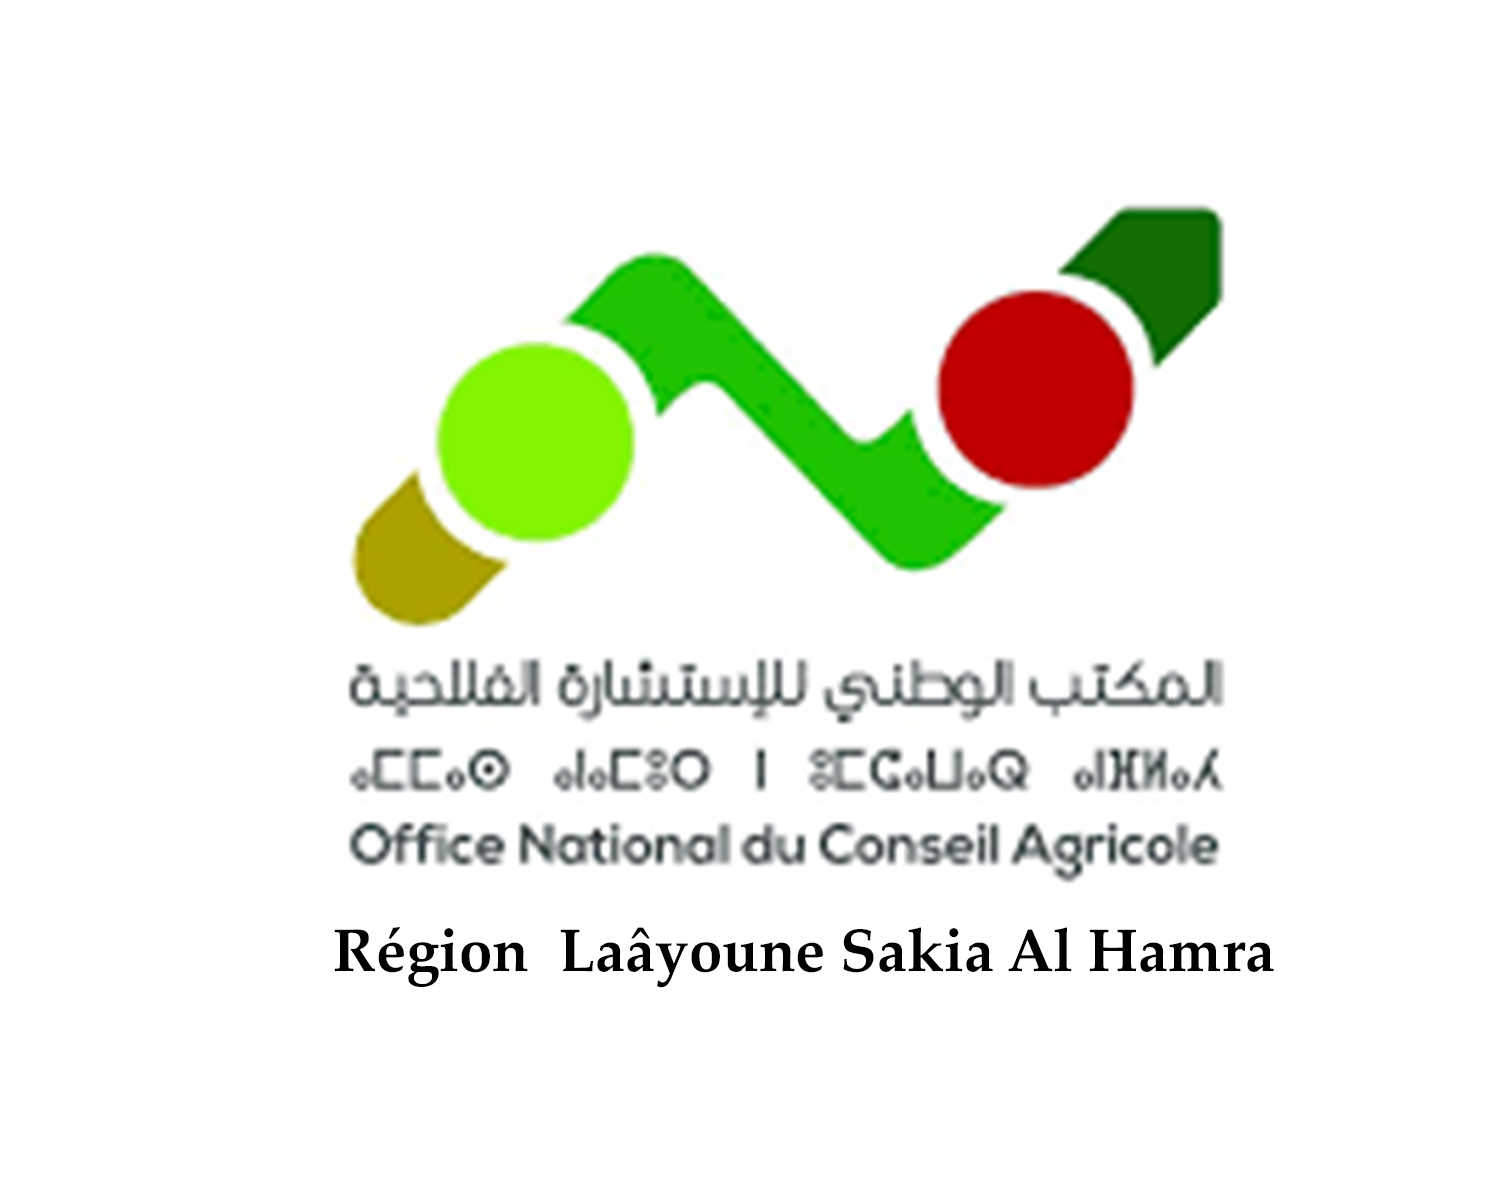 Formation au profit des agriculteurs, filles et des fils d’agriculteurs de la région Laâyoune Sakia Al Hamra